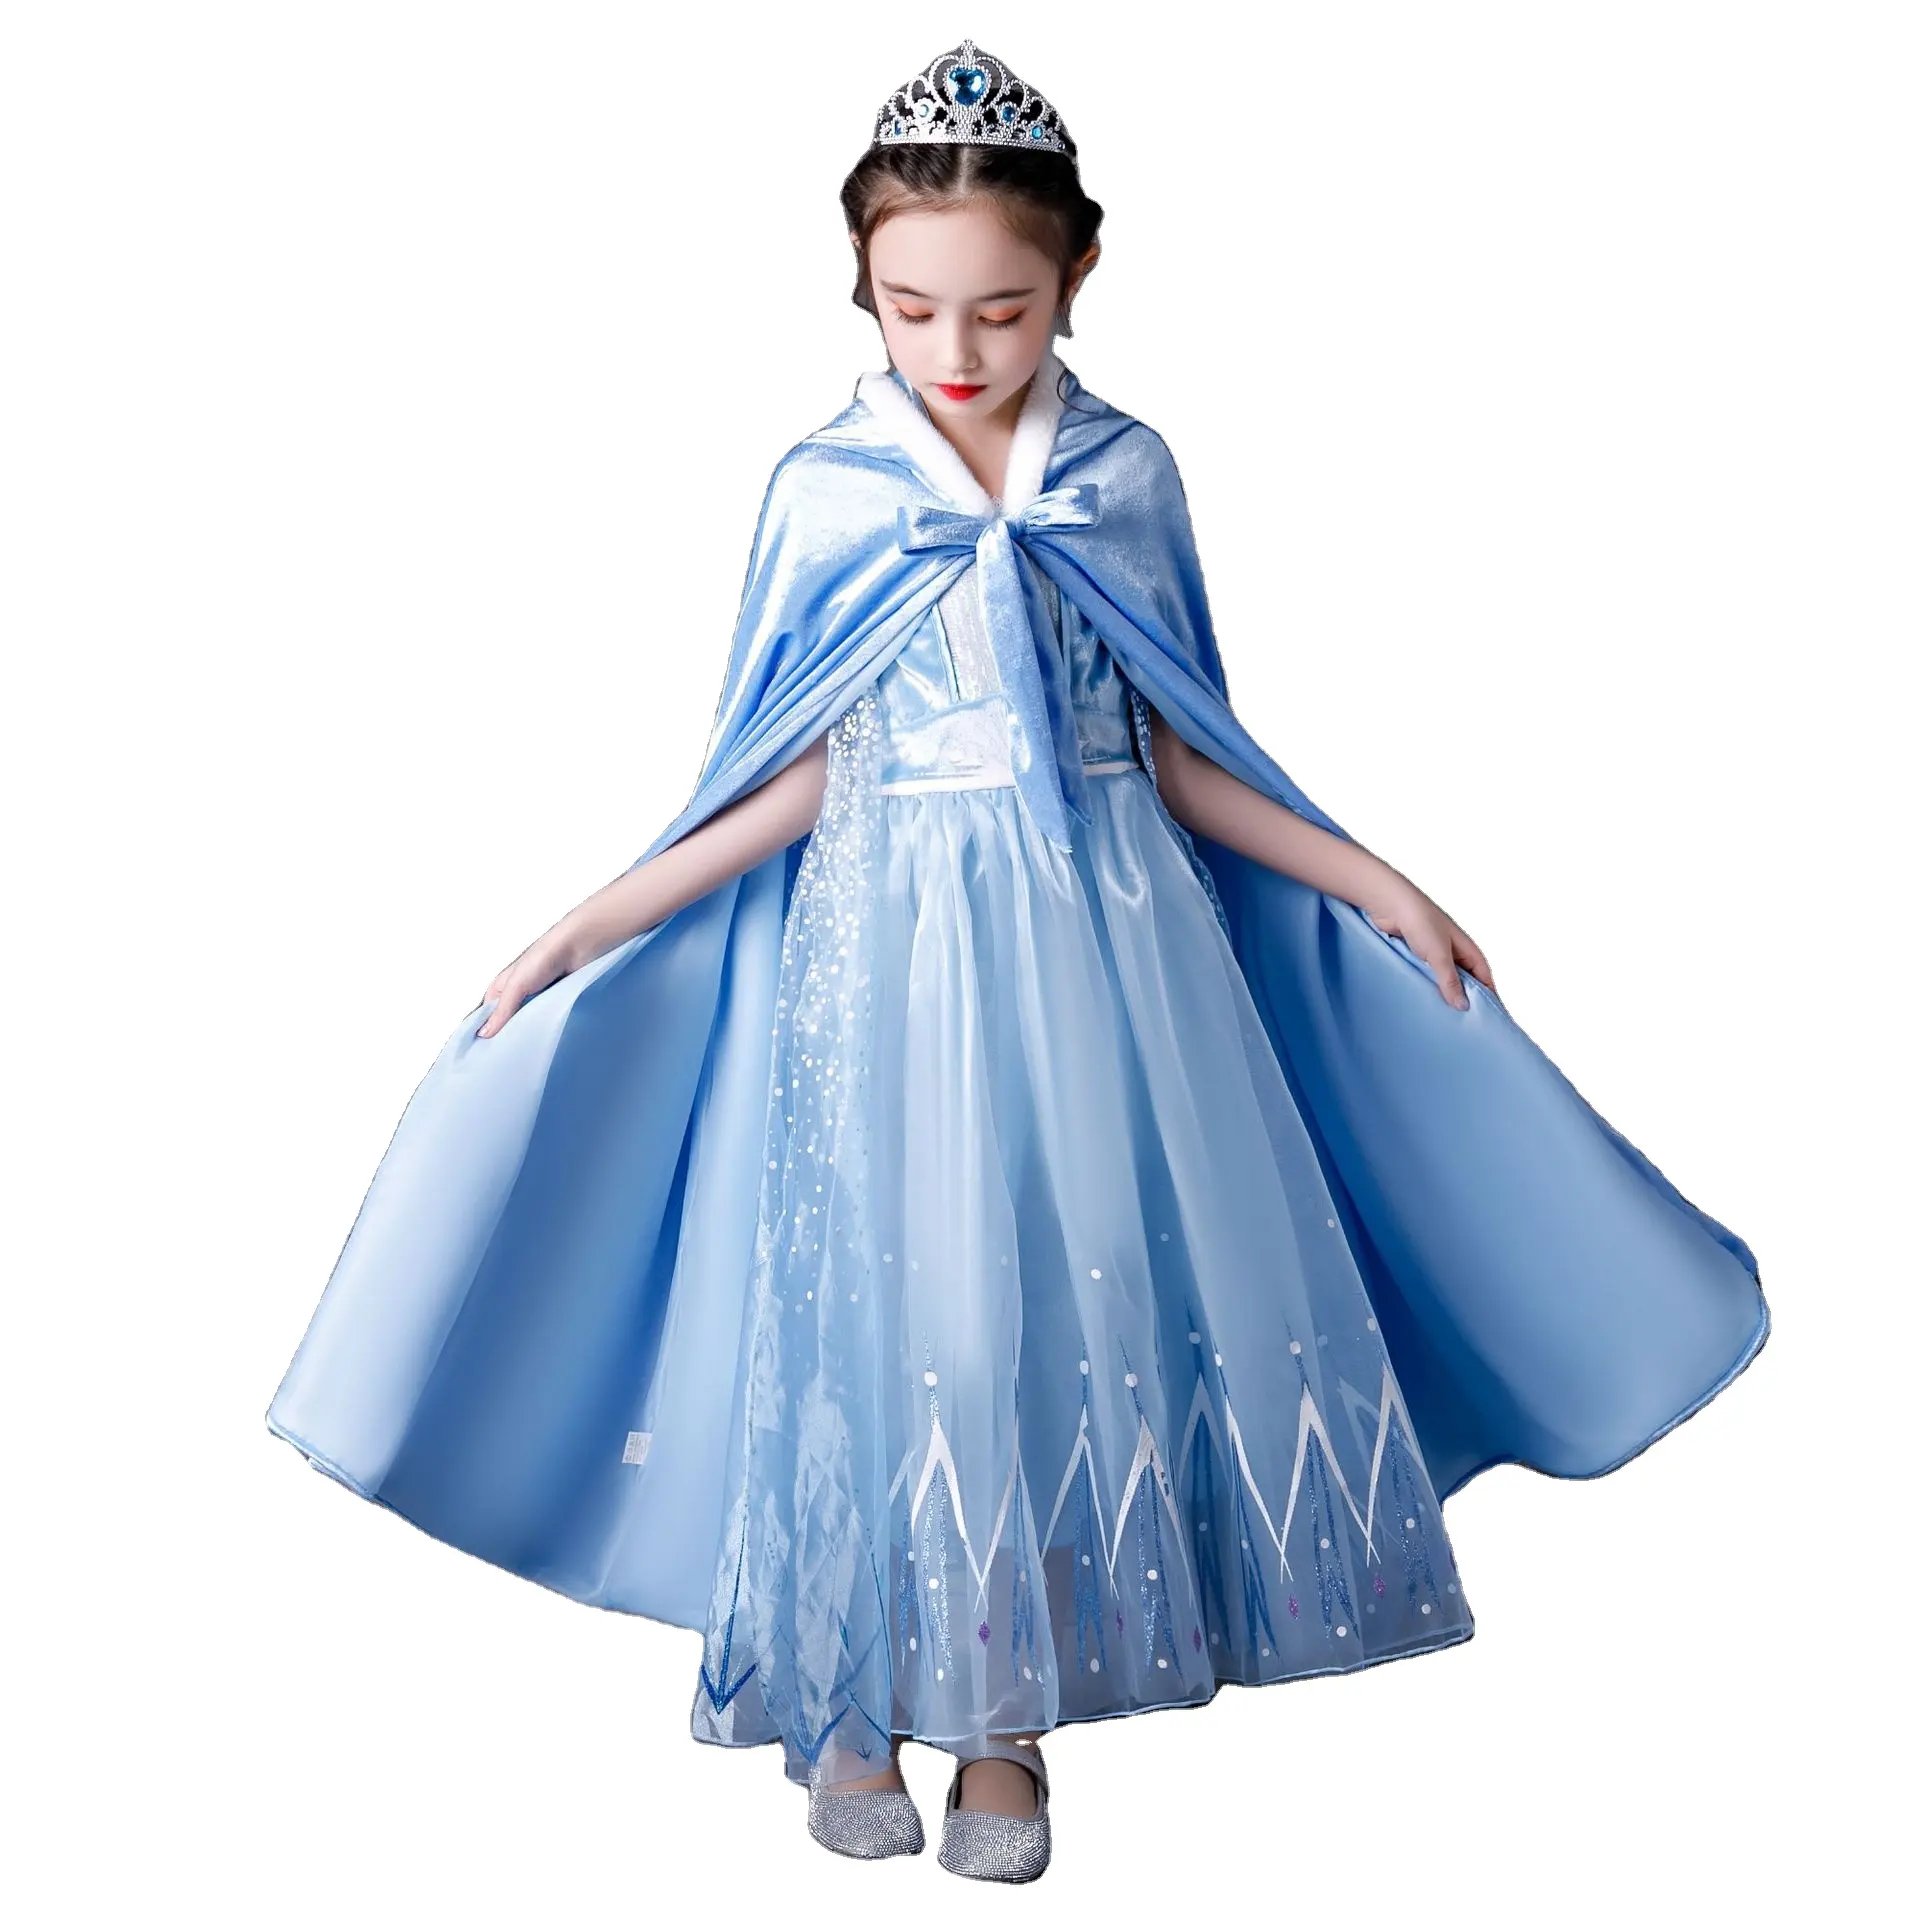 Gaun lengan pendek anak perempuan, Gaun Elsa Frozen, lengan pendek untuk anak-anak